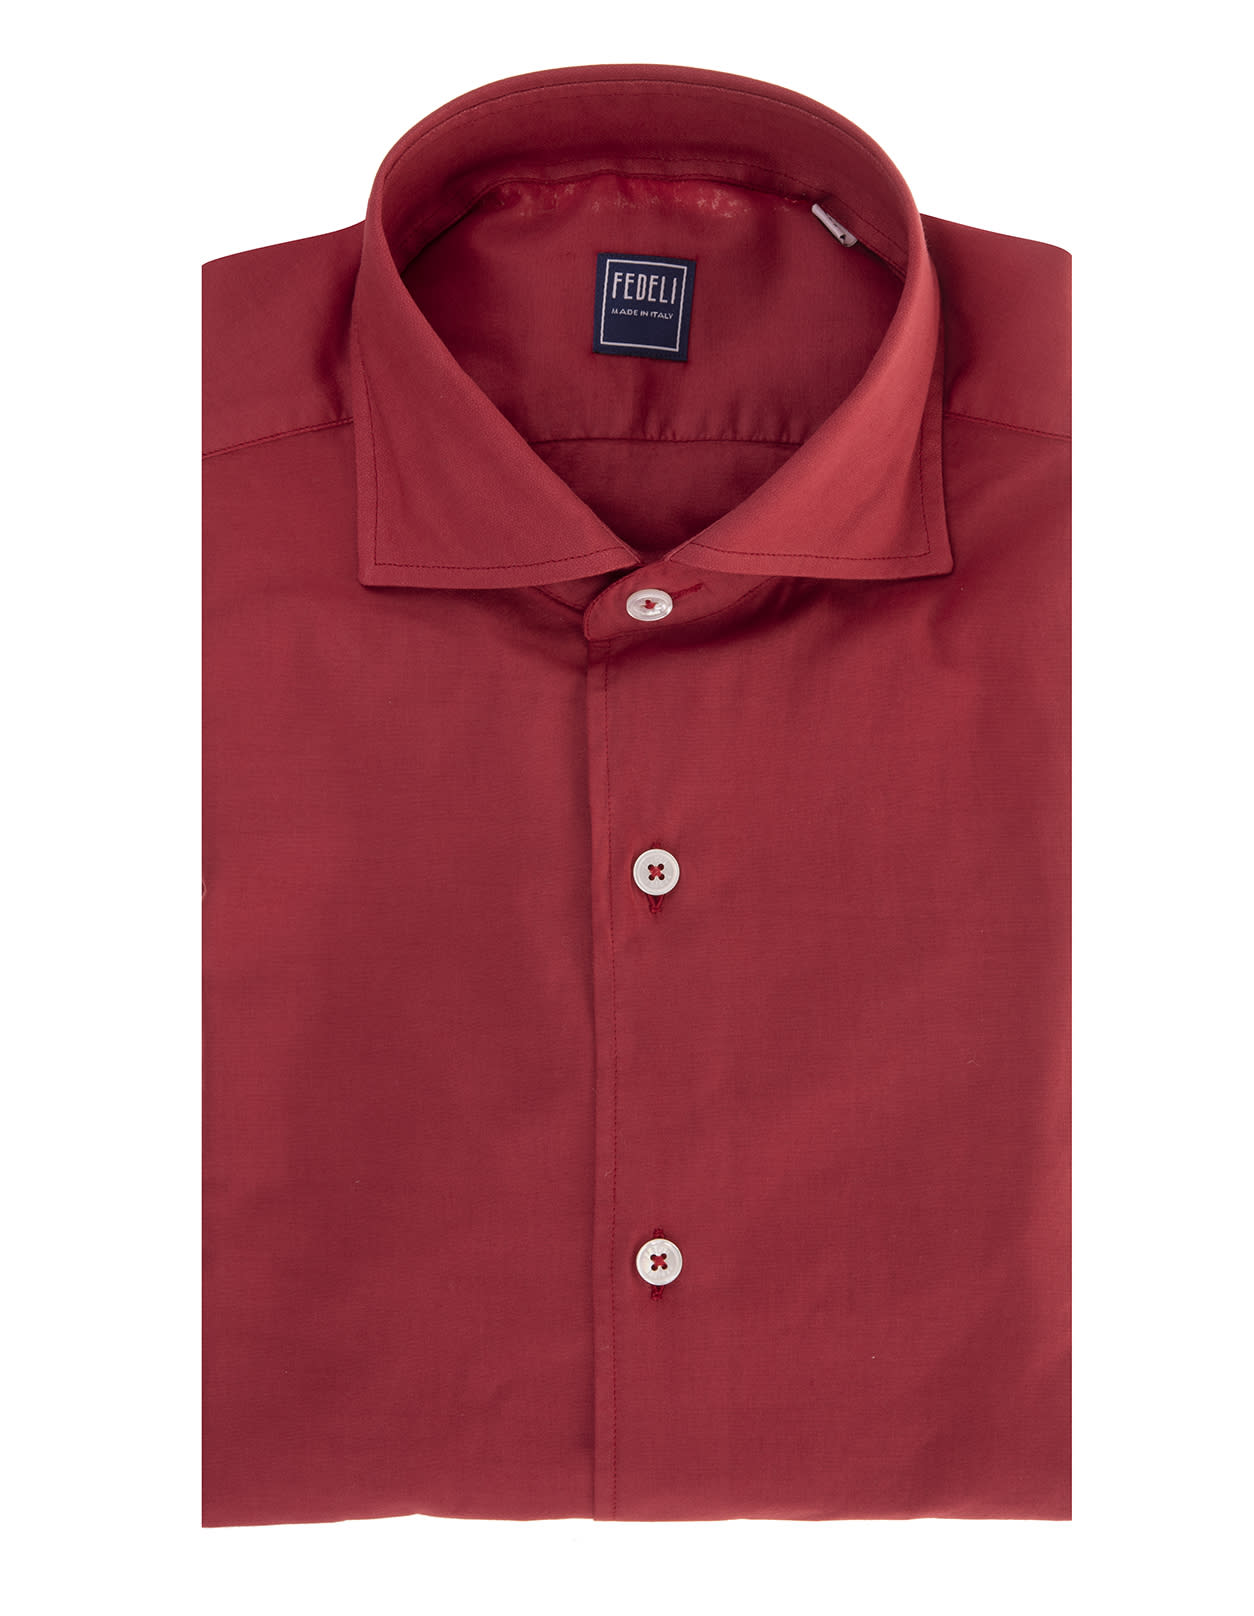 Fedeli Man Dark Red Lightweight Cotton Shirt